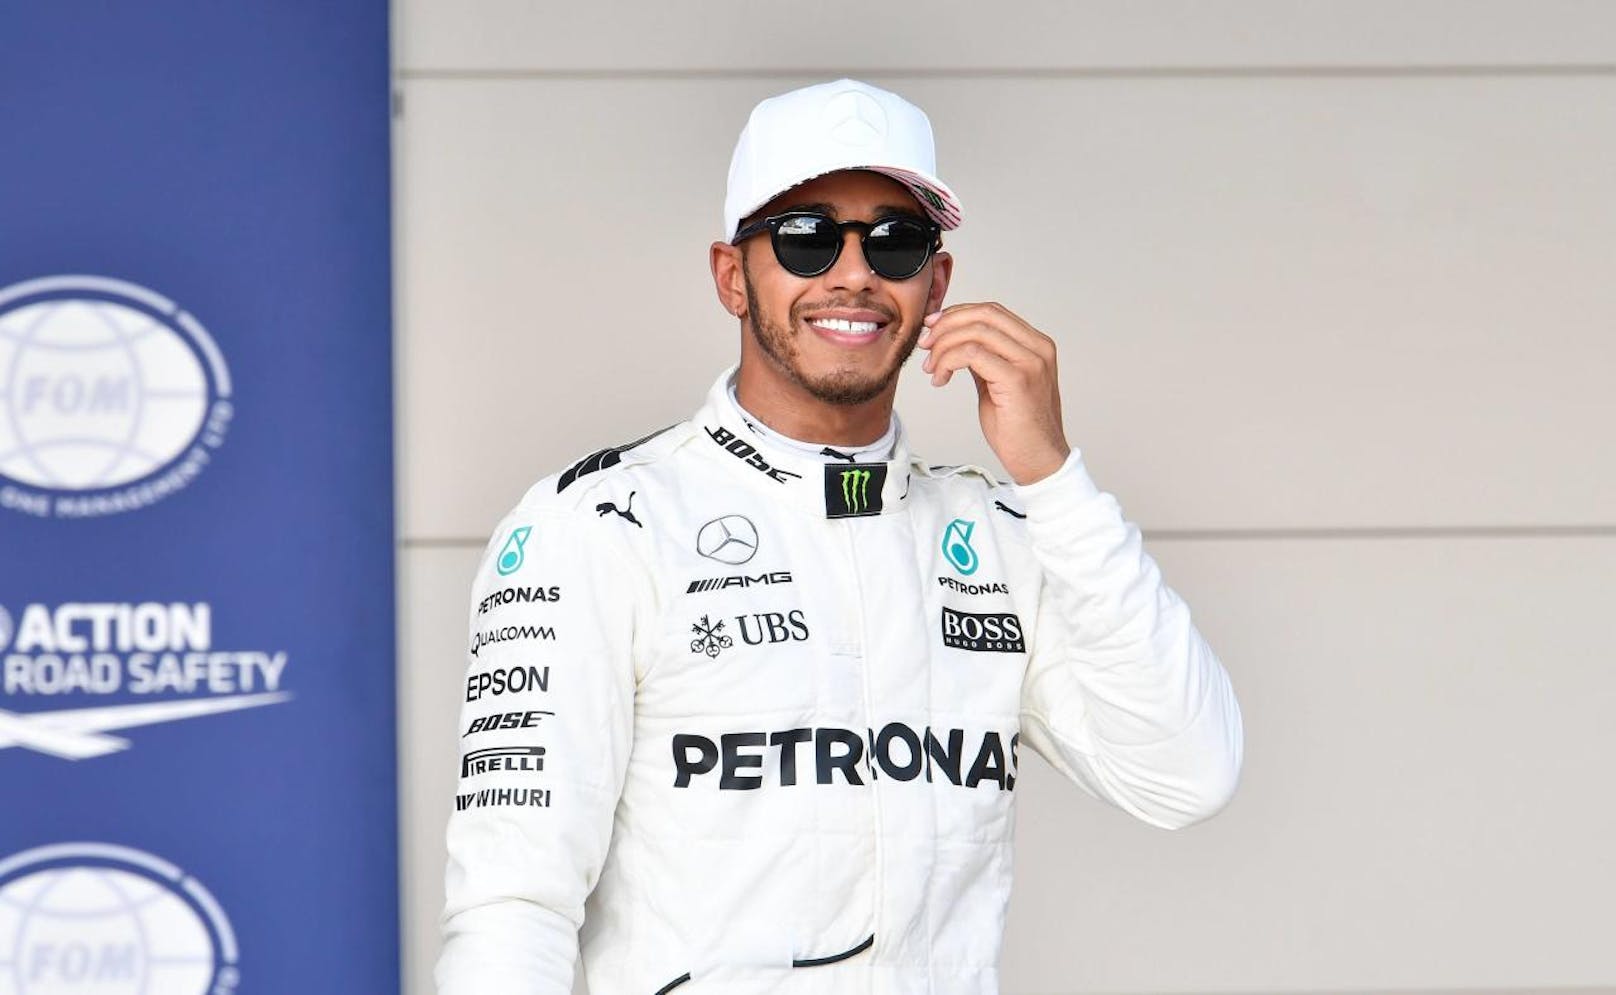 Platz 10: Lewis Hamilton (Formel 1) - 46 Millionen US-Dollar (38 Mio. Gage, 8 Mio. Werbeverträge)